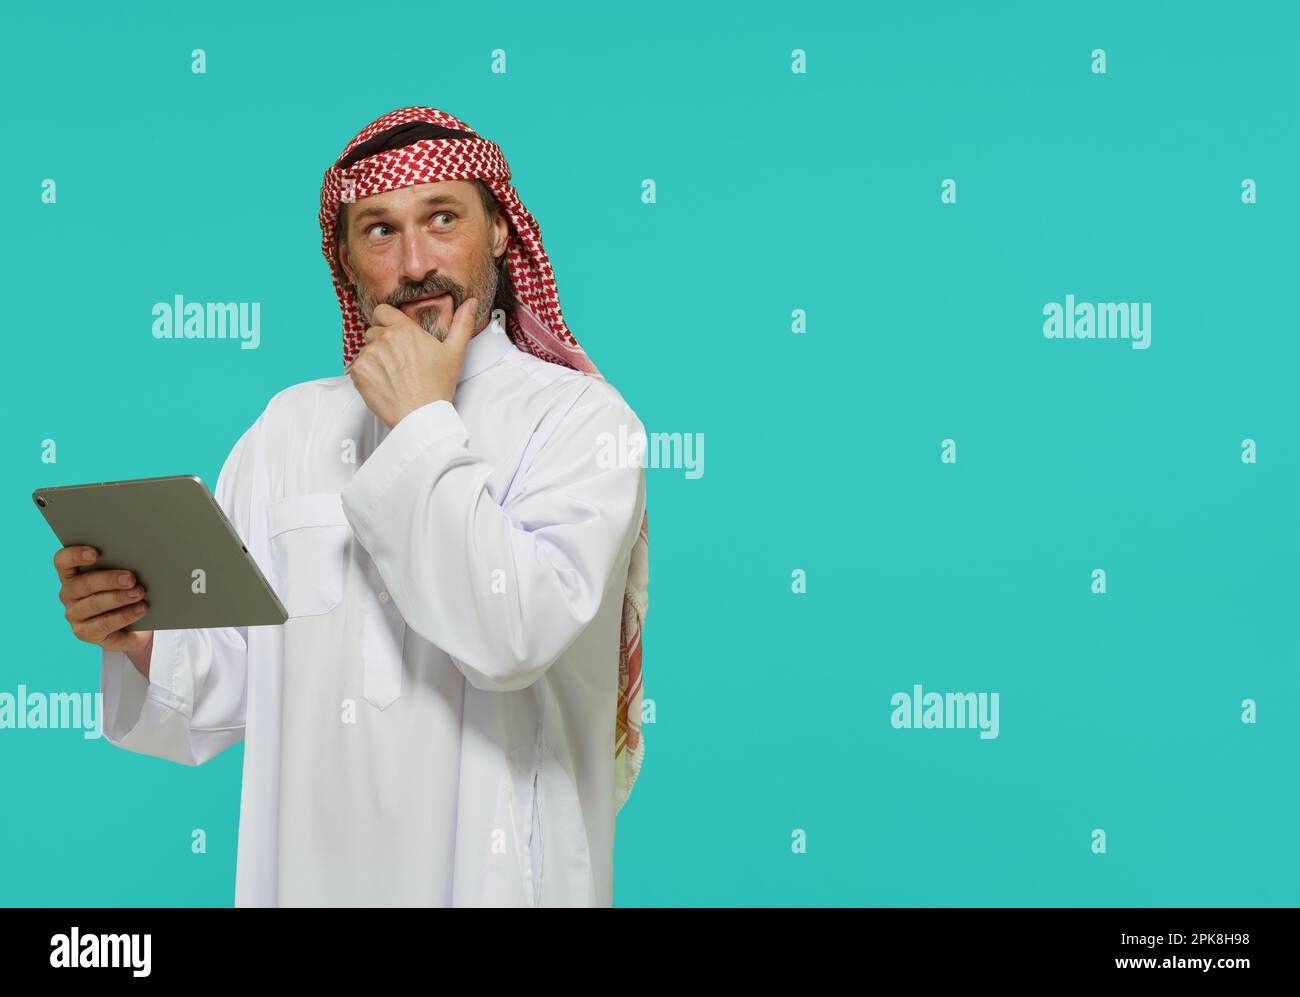 Online-Shopping im Nahen Osten. Ein arabischer Mann hält ein Tablet und wählt Waren und Dienstleistungen aus. Hochwertiges Foto Stockfoto